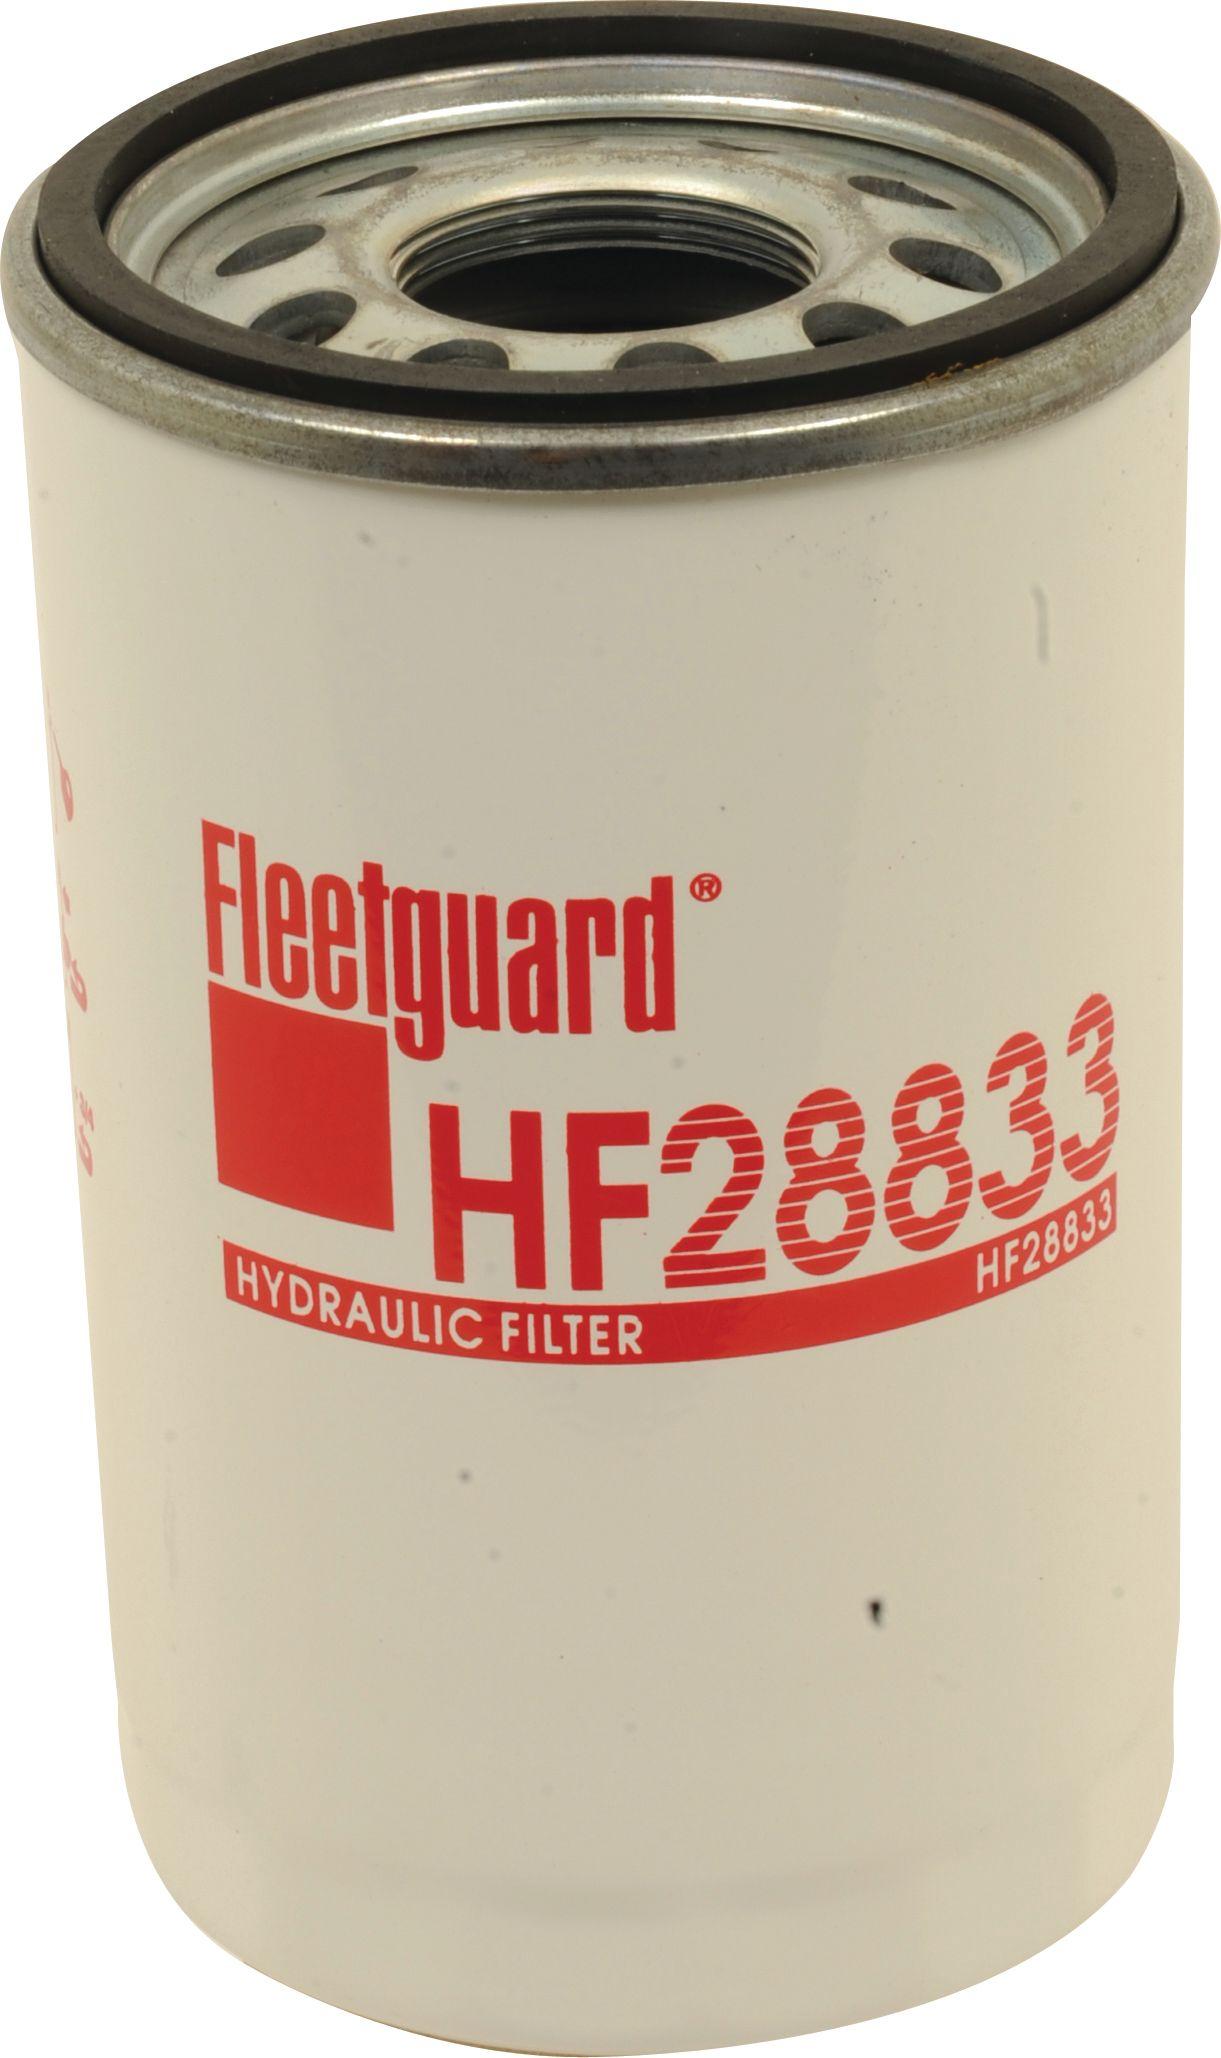 FIAT HYDRAULIC FILTER HF28833 76413